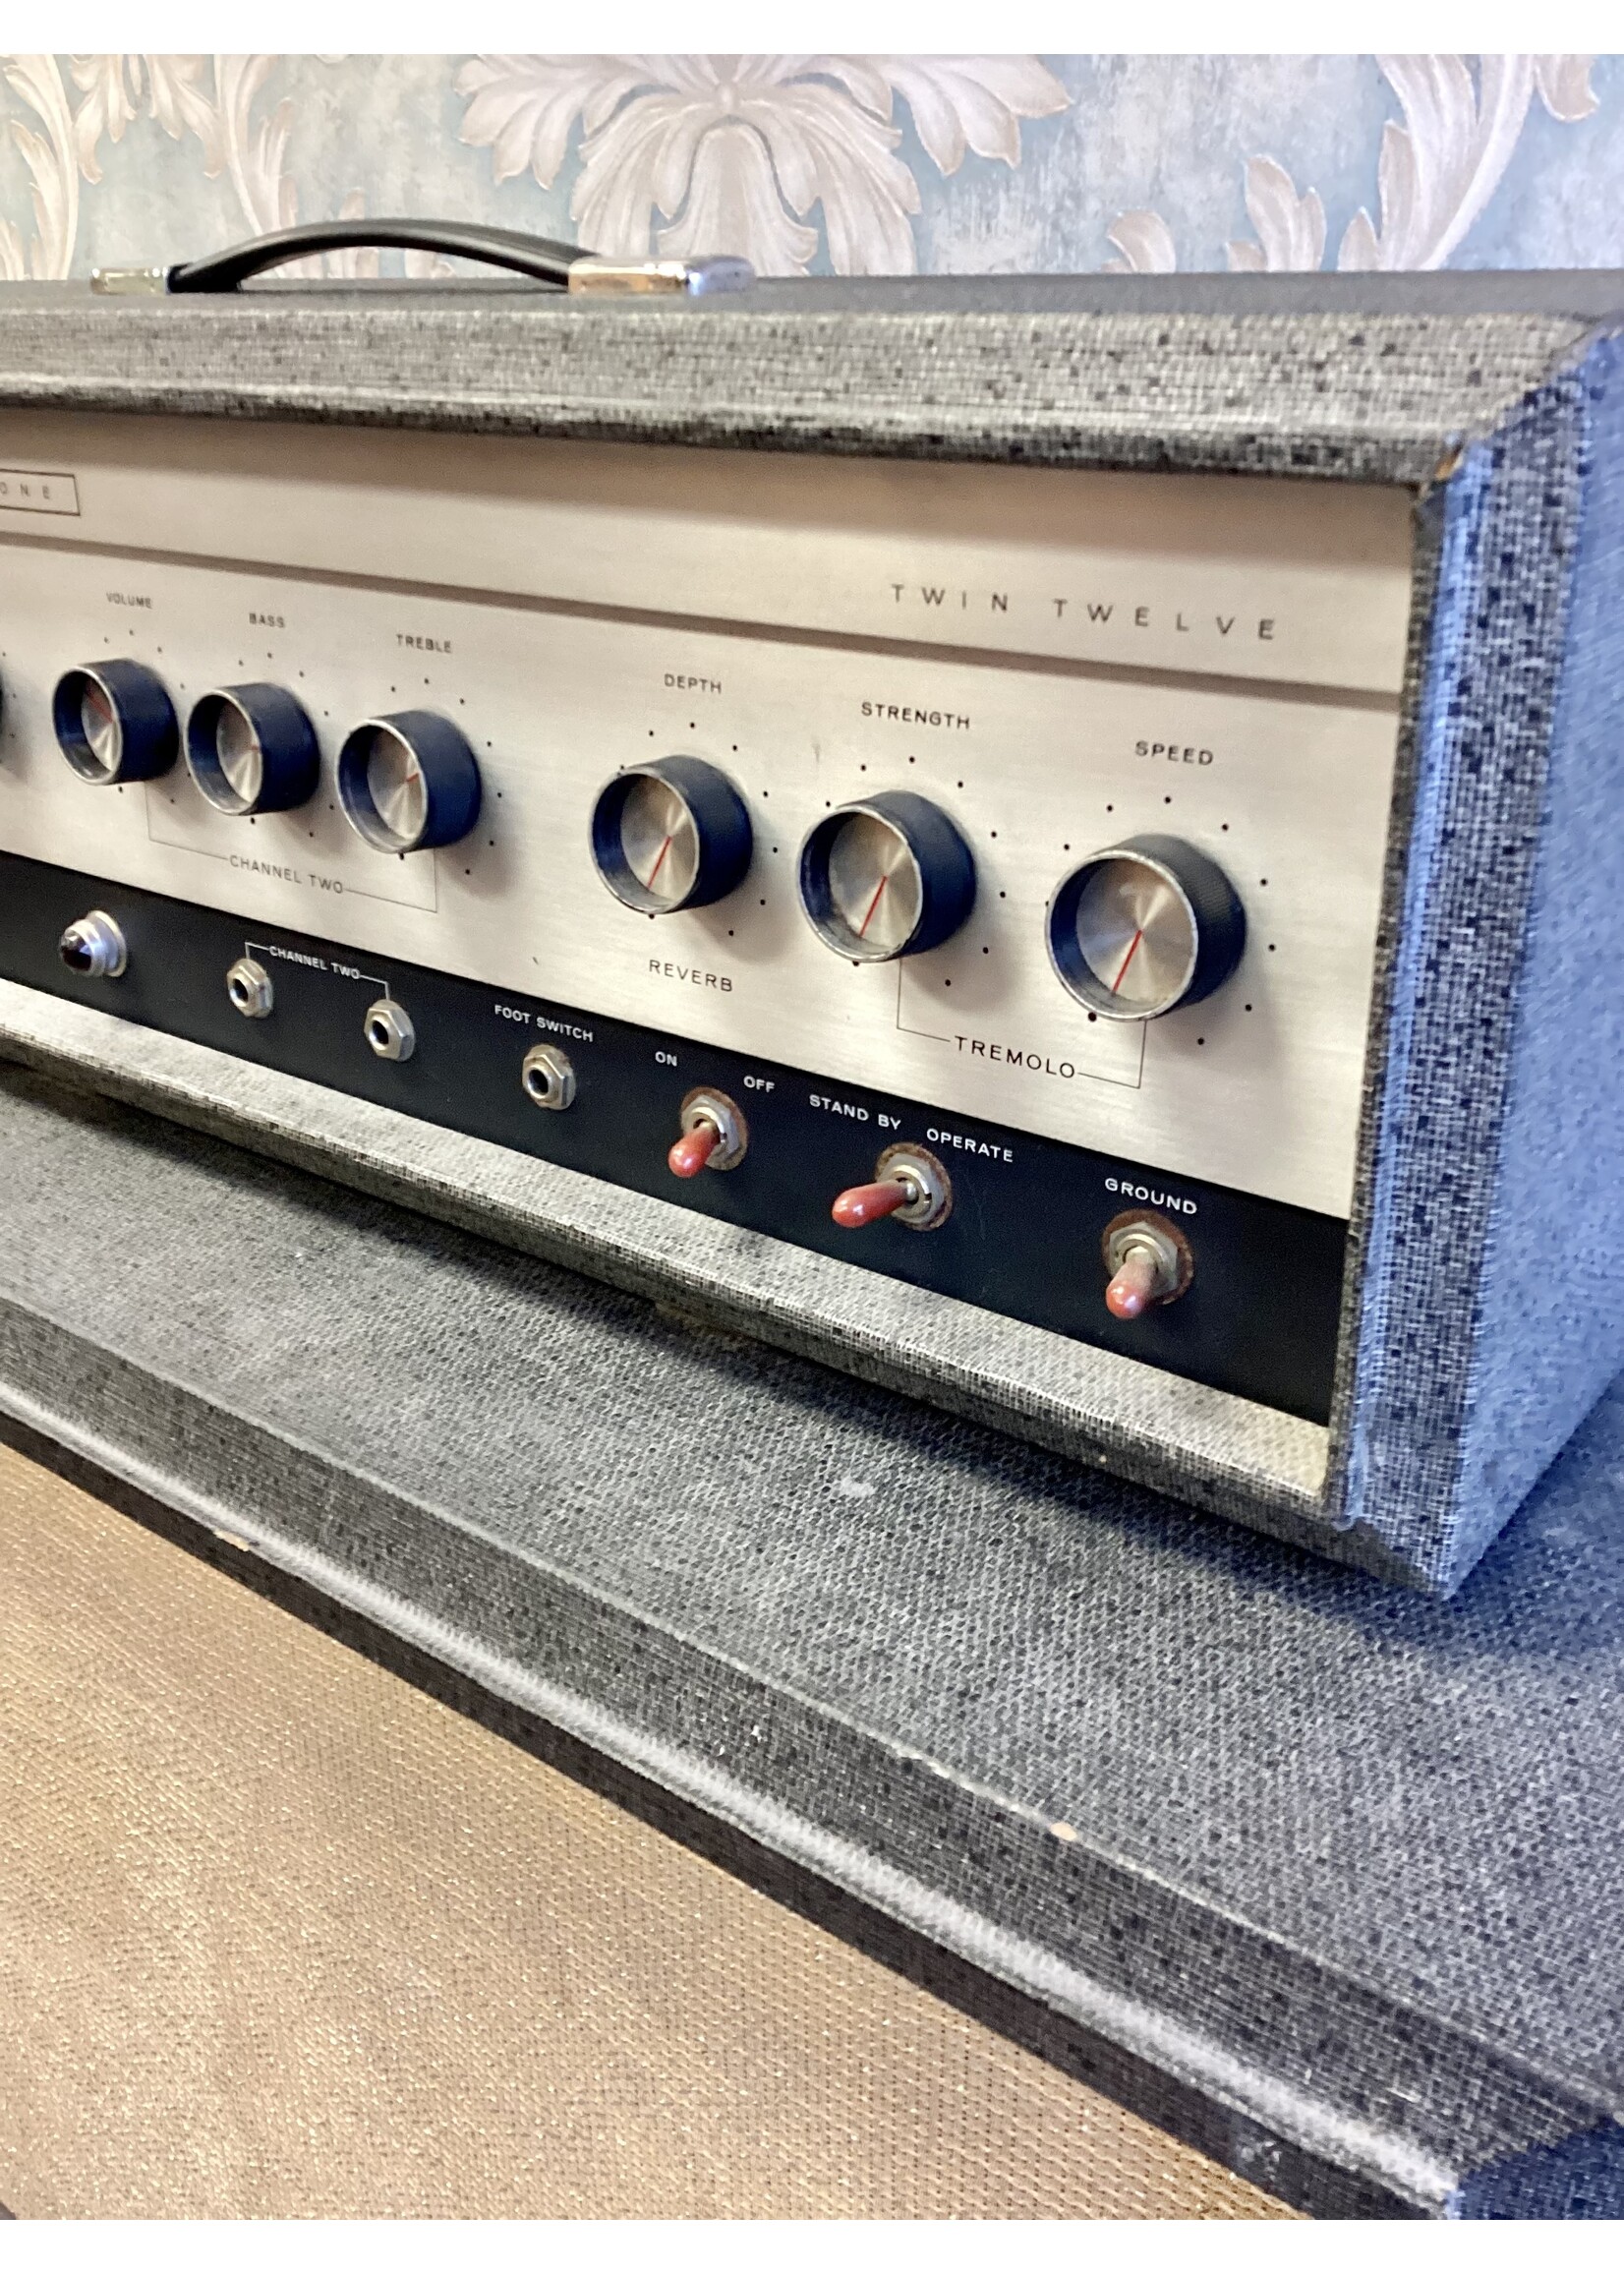 Silvertone Silvertone 1484 Twin Twelve Amplifier - 1964 - SOLD